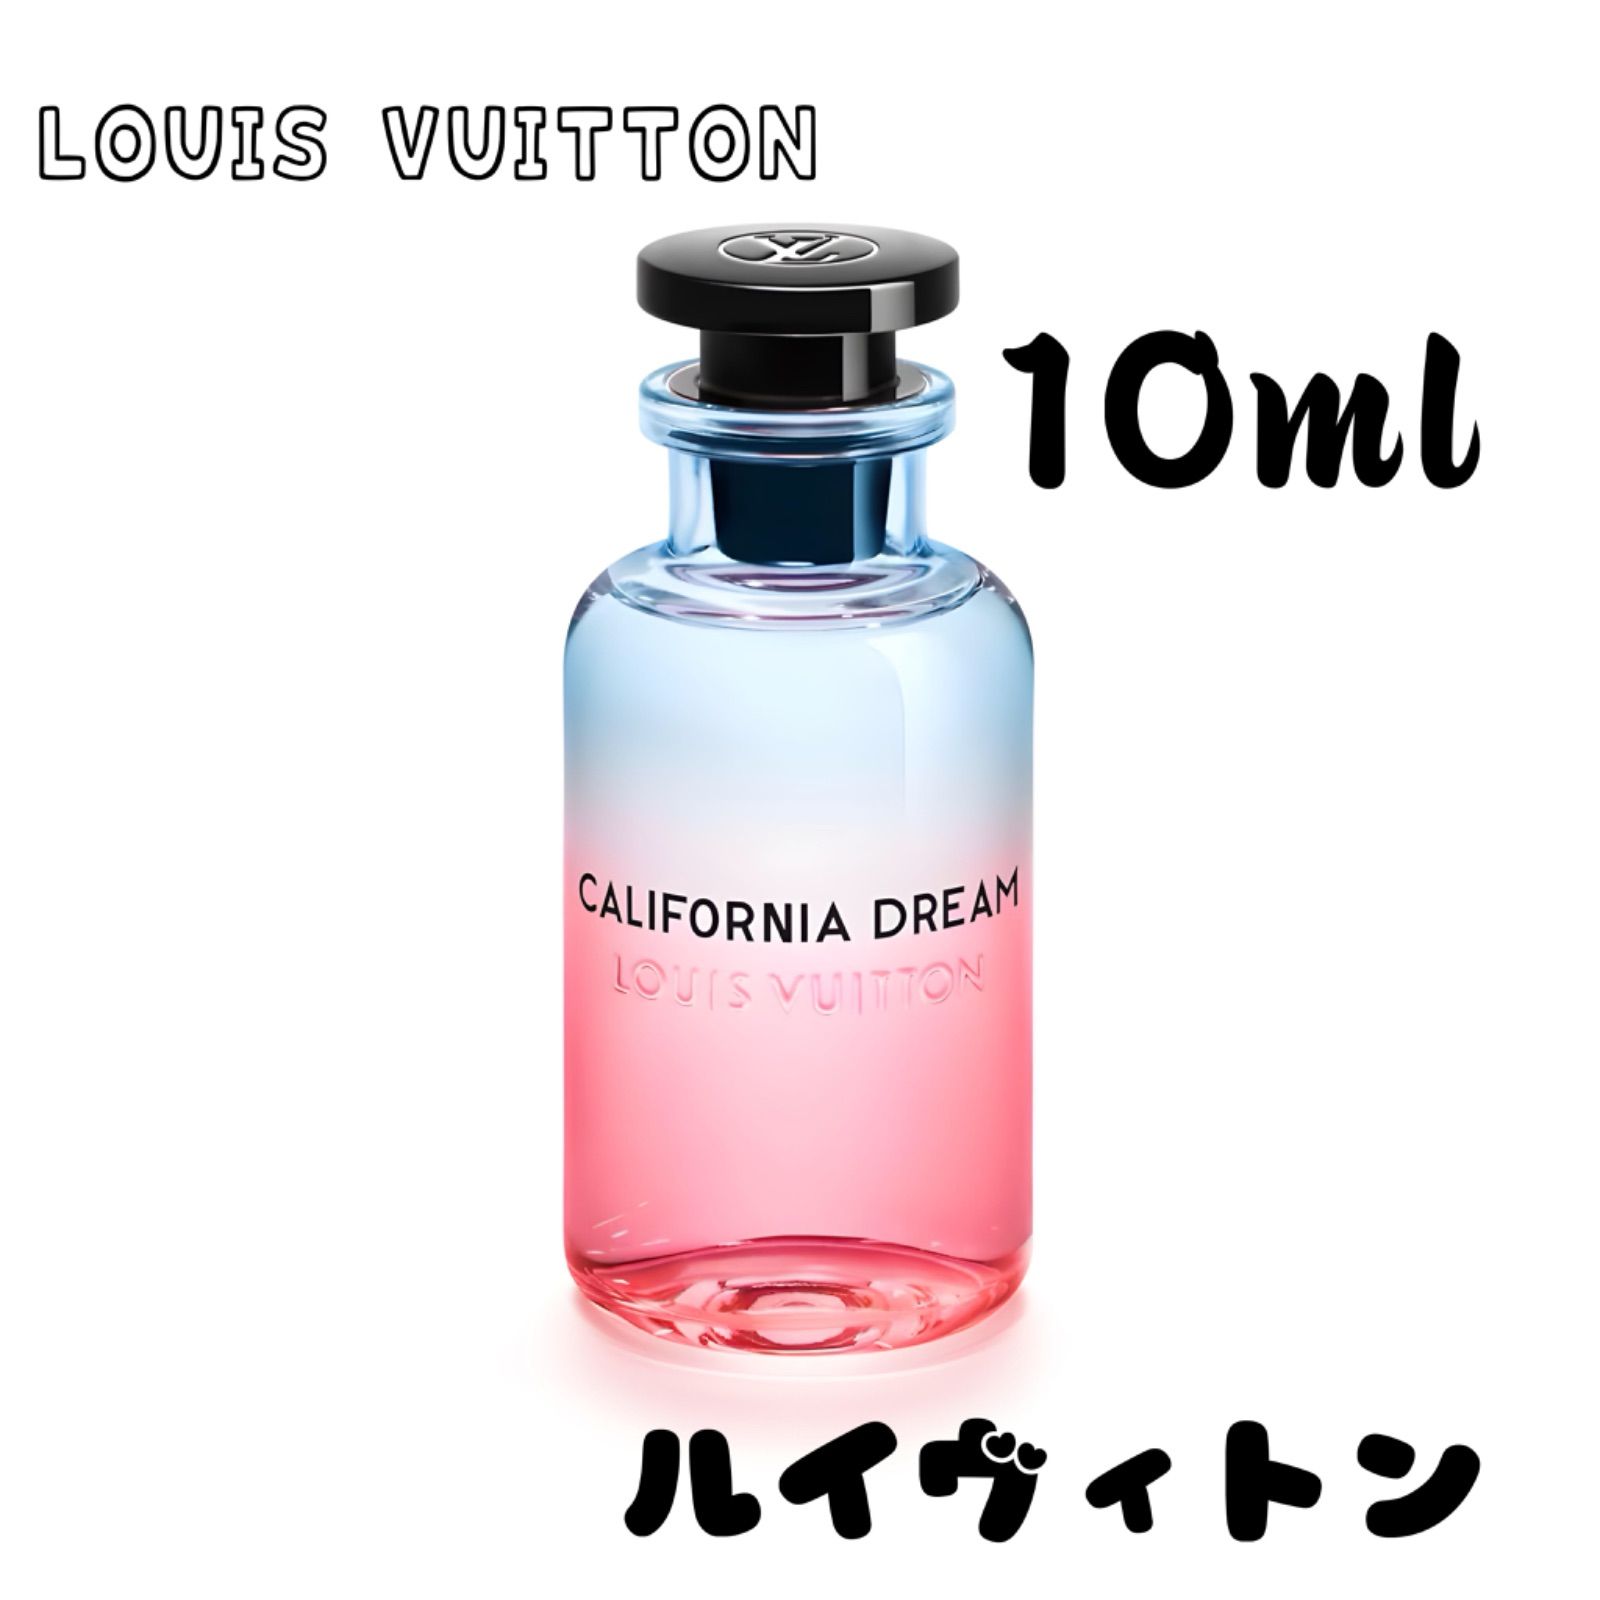 Louis Vuitton California Dream 10ml